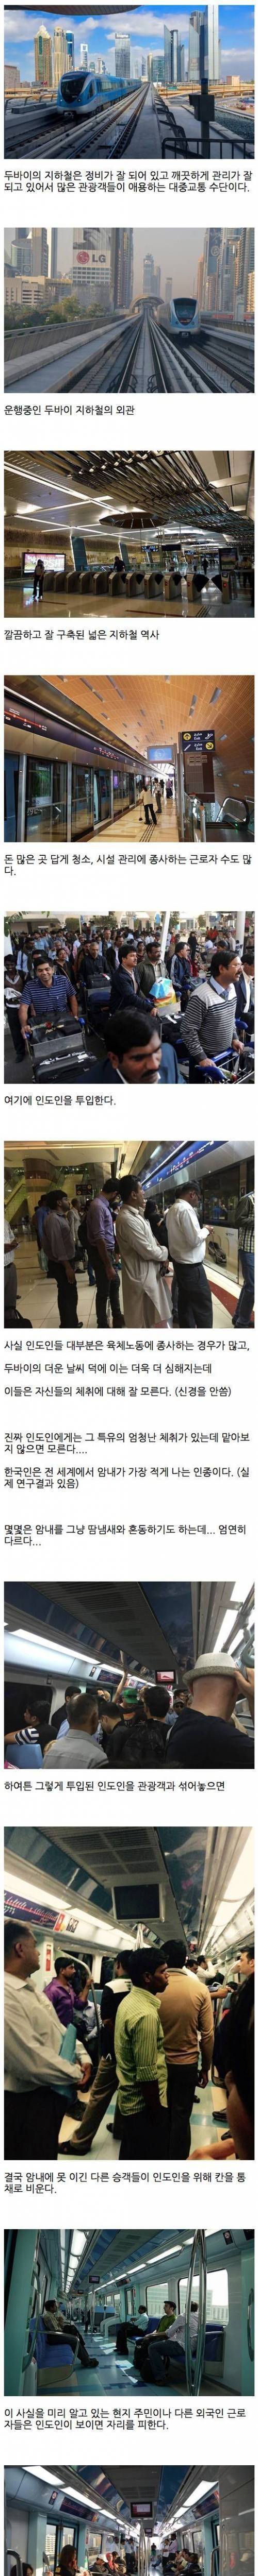 두바이 지하철에 인도인이 많은 이유 그리고 암내